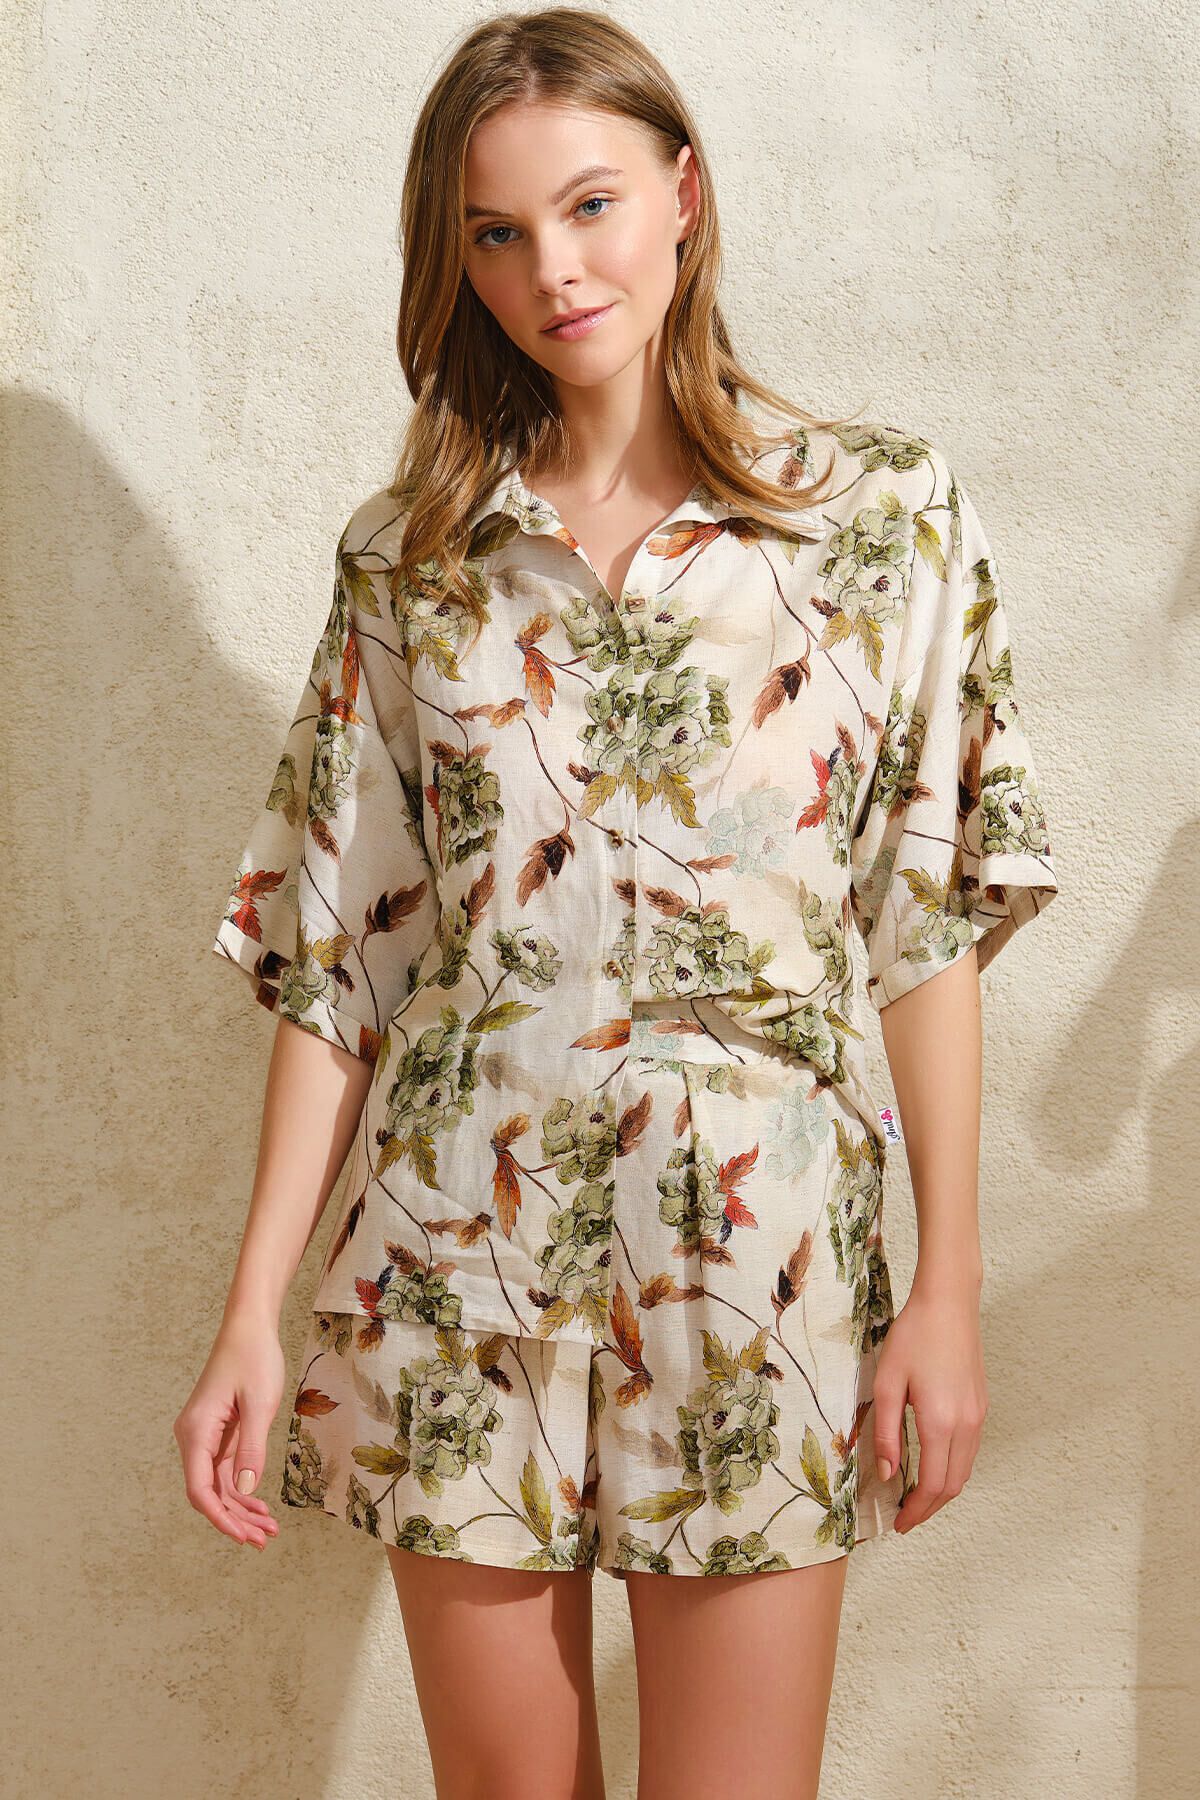 Anıl Kısa Yarım Kol V Yaka Kadın Viskon Çiçek Desenli Yazlık Kısa Düğmeli Pijama Takımı Anıl 9830